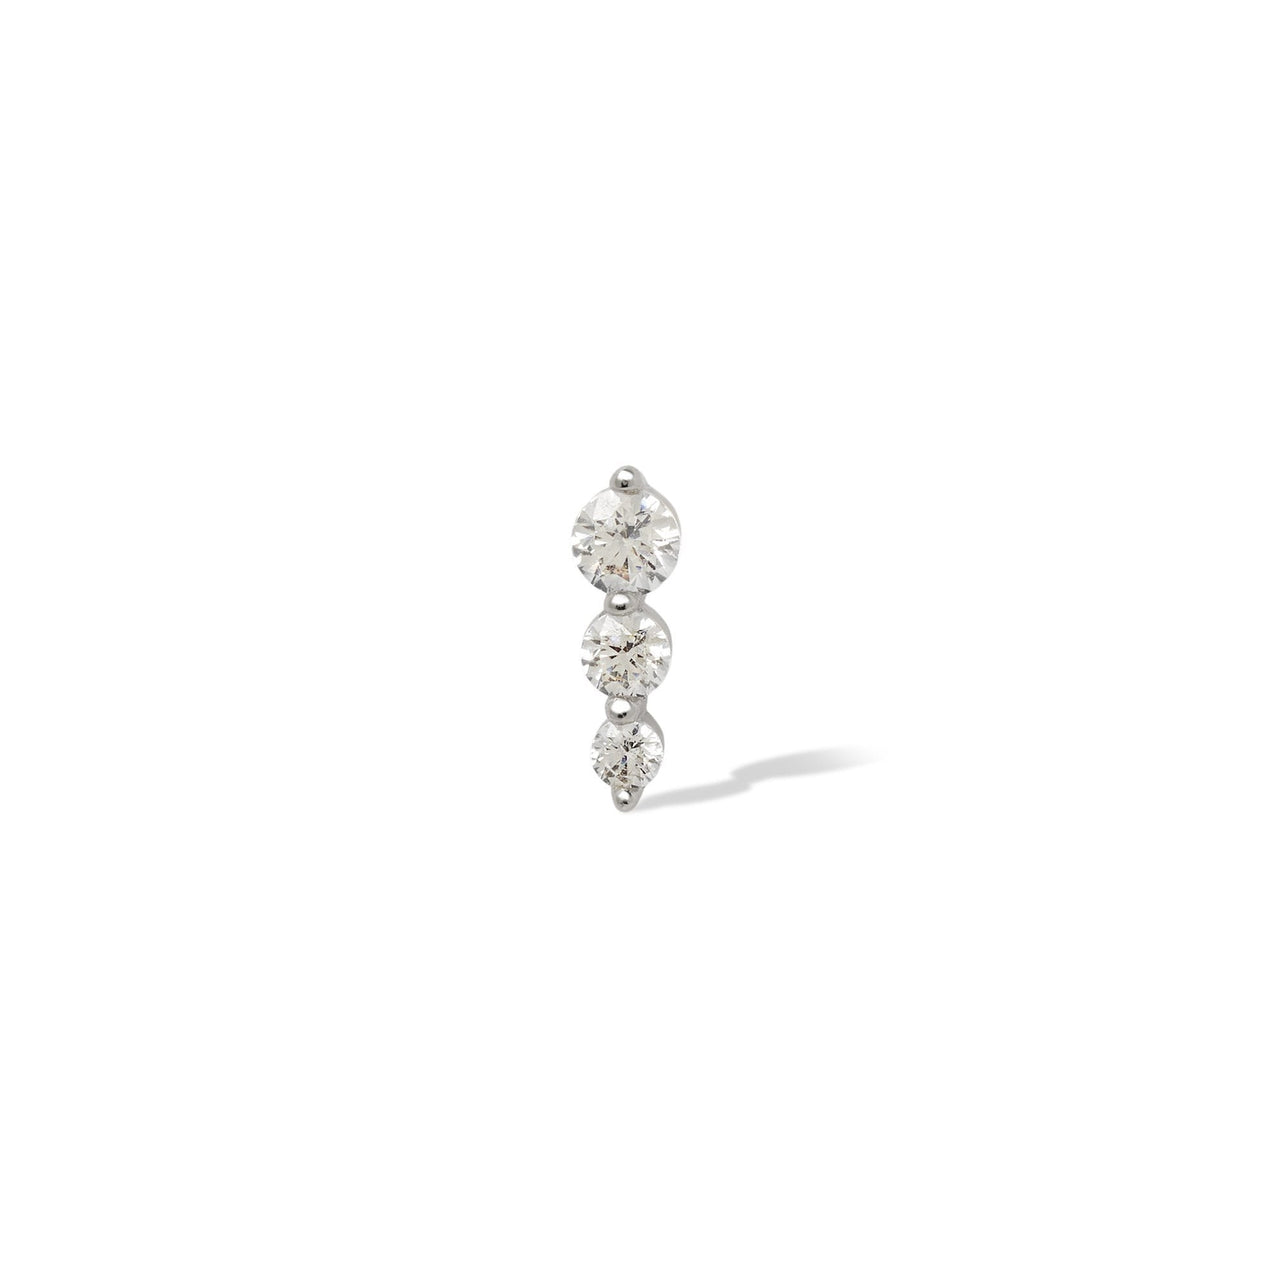 Single earring "True Love" triple dot sterling silver stud  (ball screw)